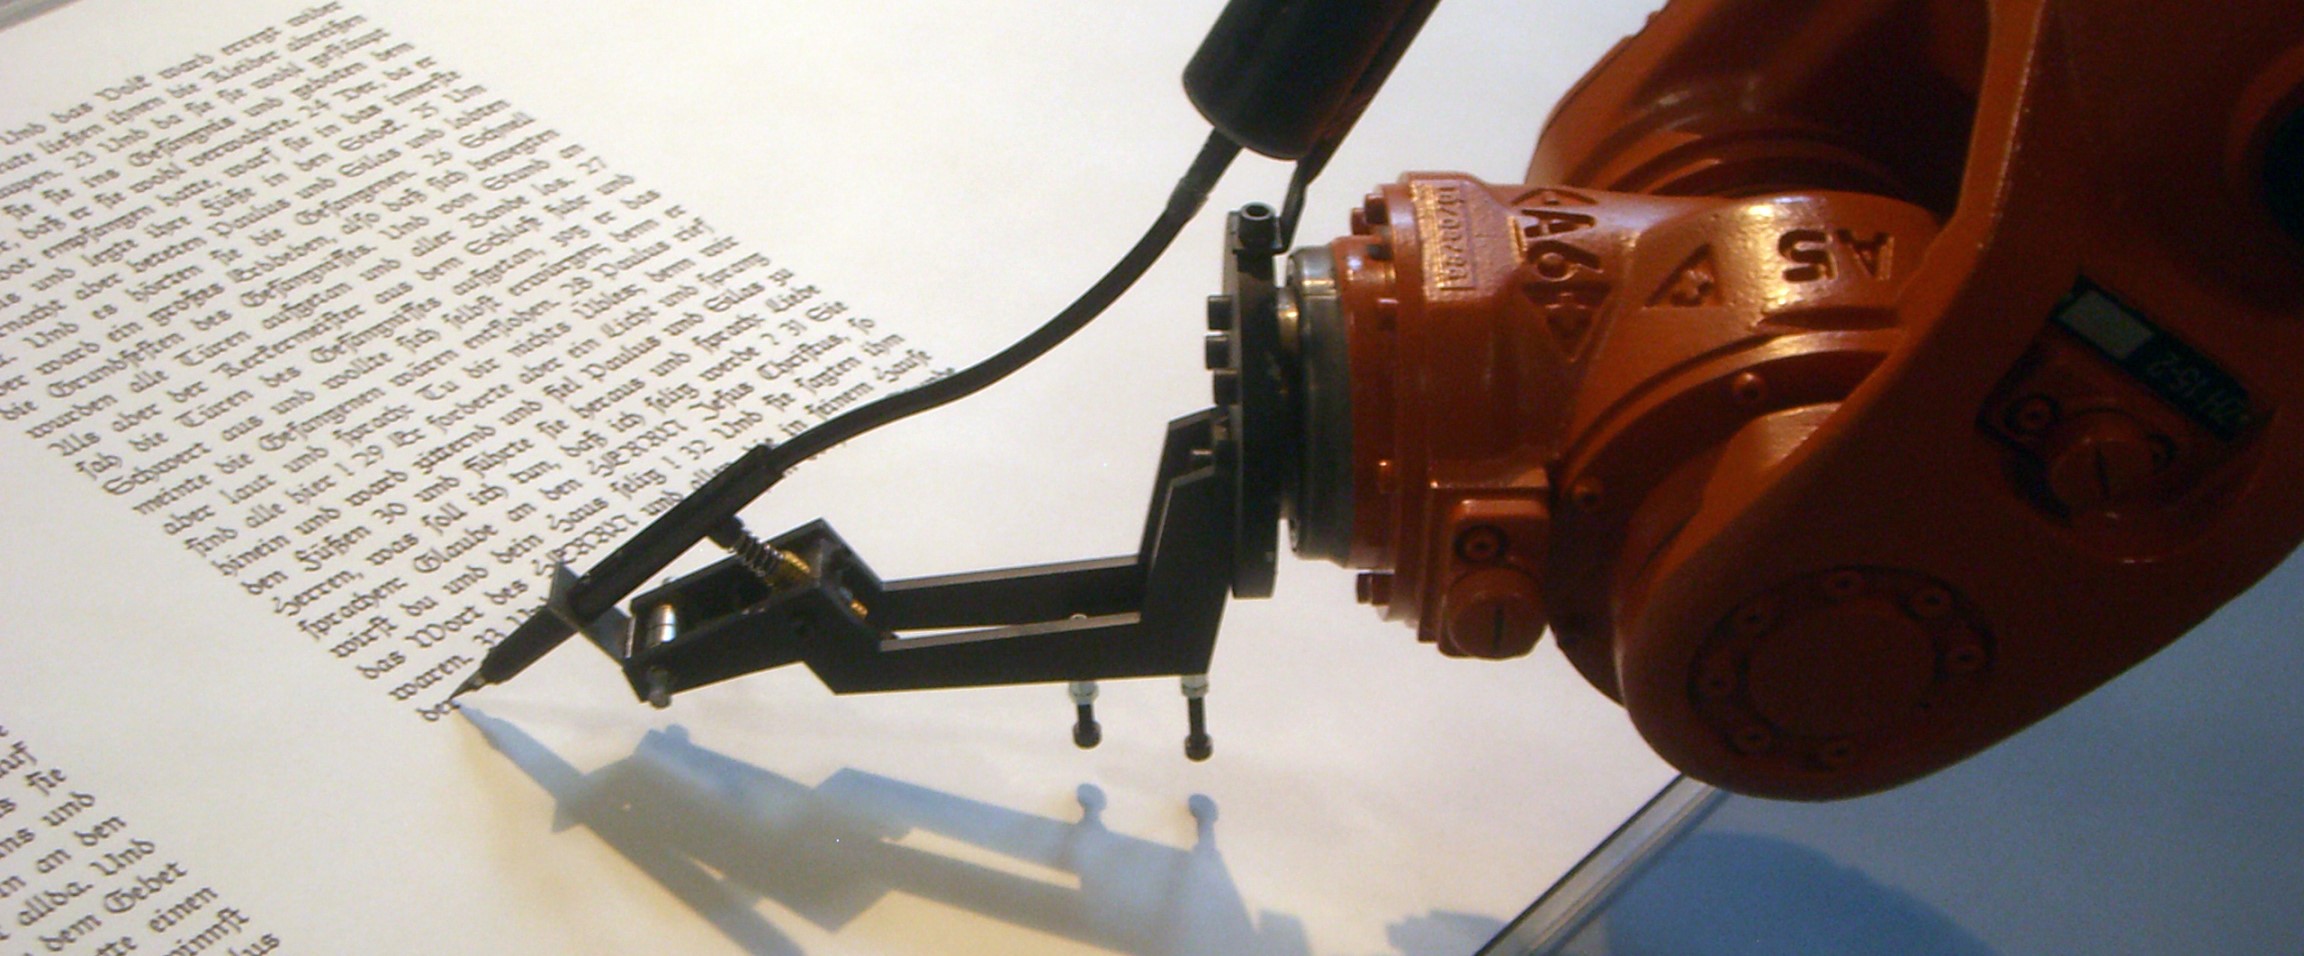 robot writing manuscript